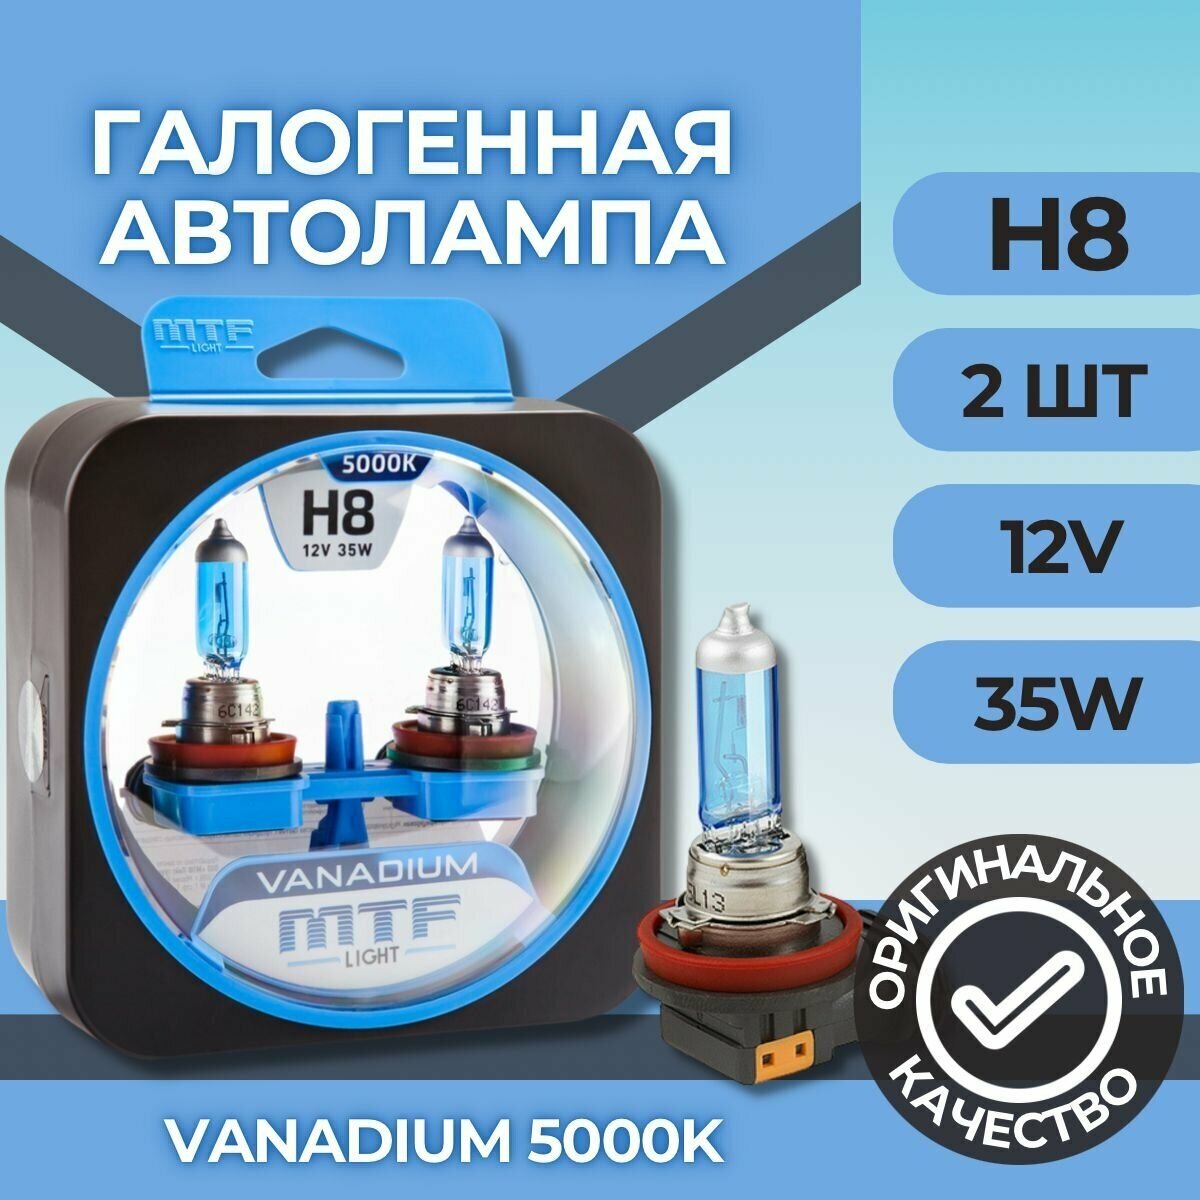 Галогеновые лампы MTF light Vanadium 5000K H8